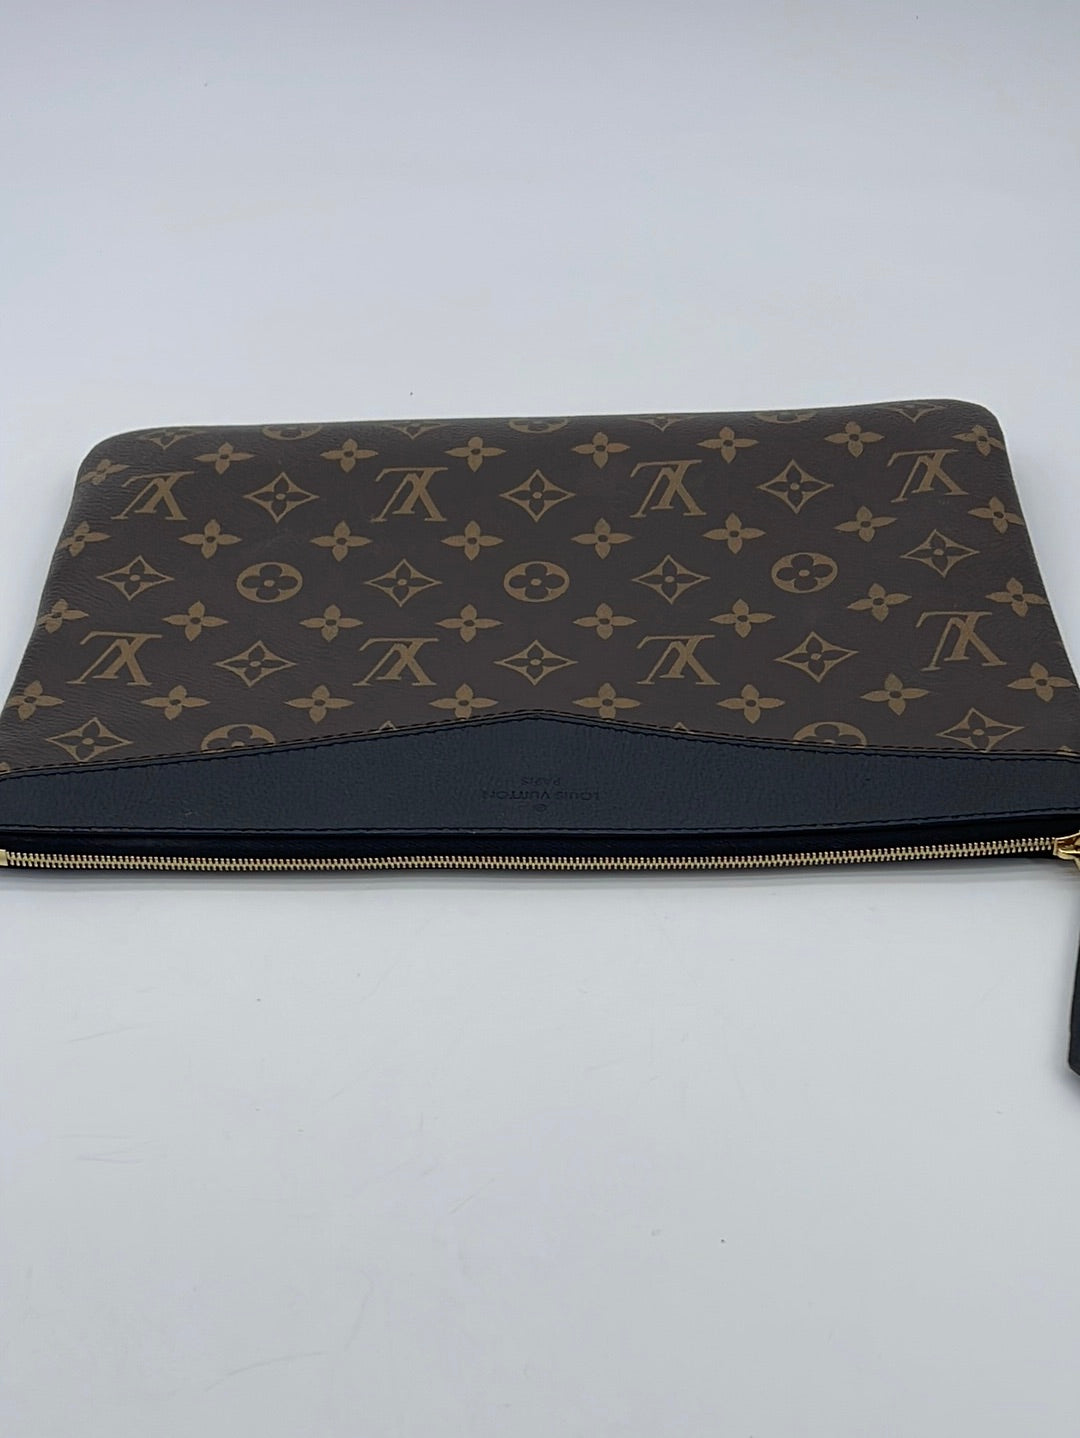 Louis Vuitton – The Lady Bag